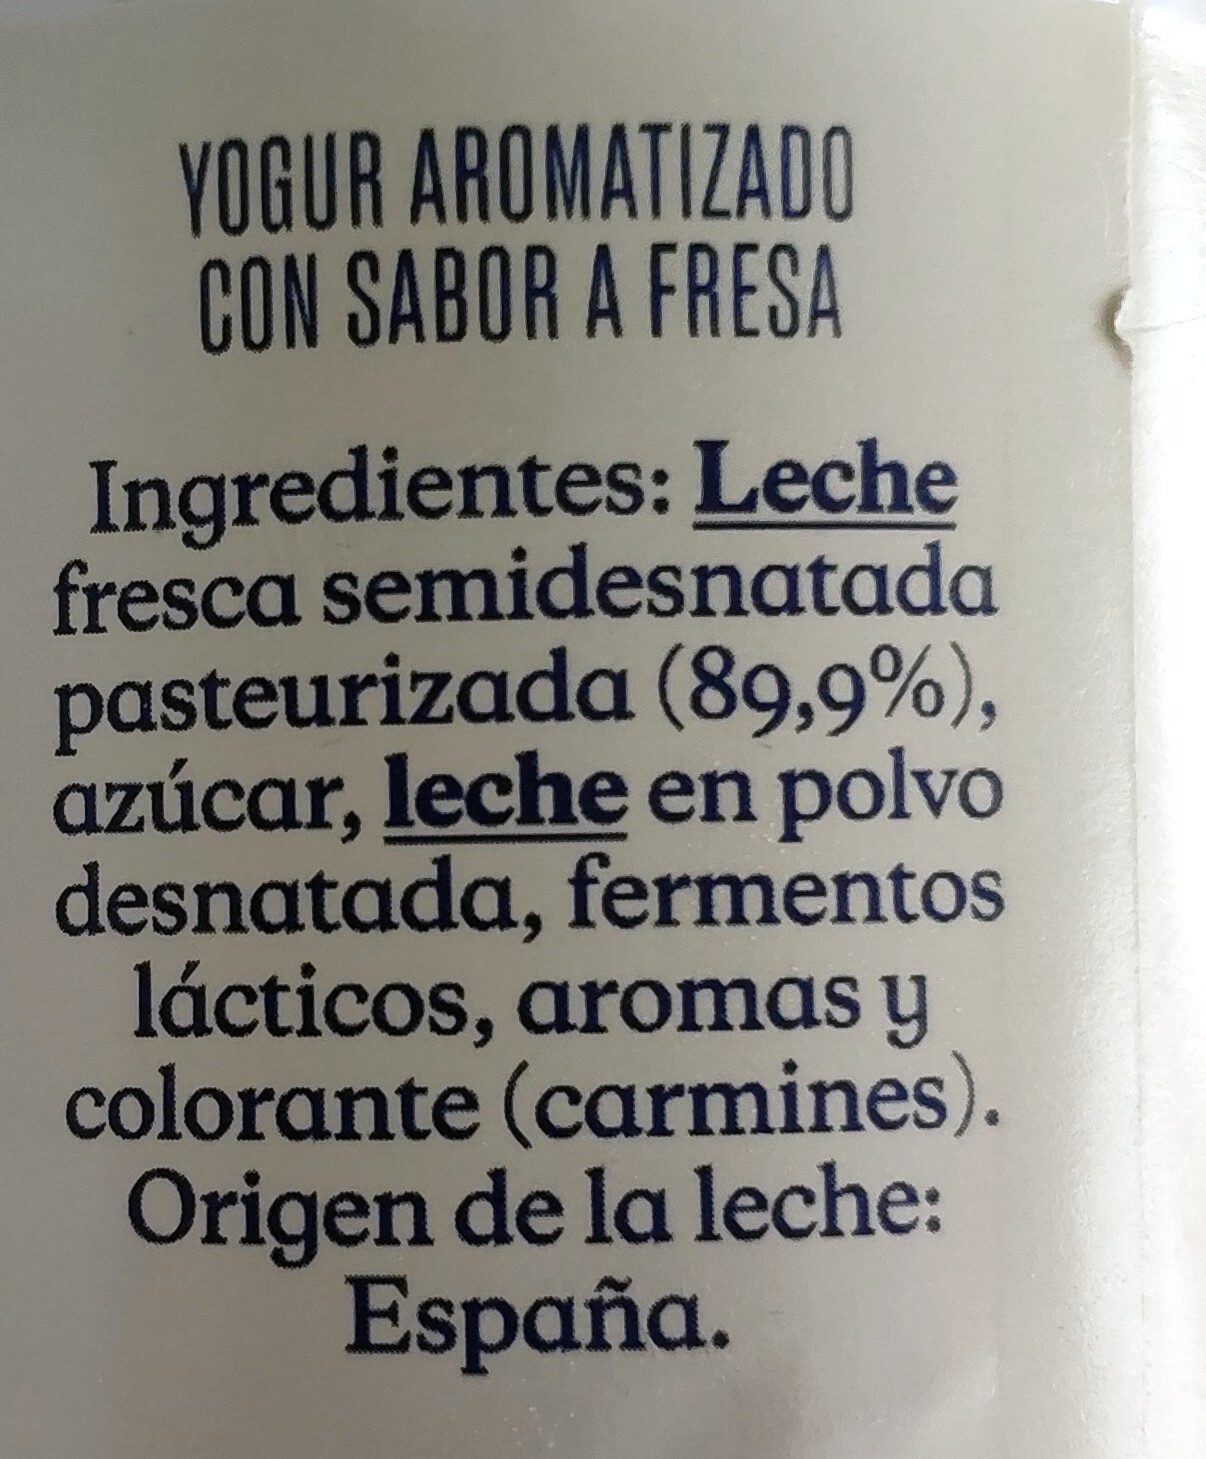 Yogur sabor fresa - Ingredients - es